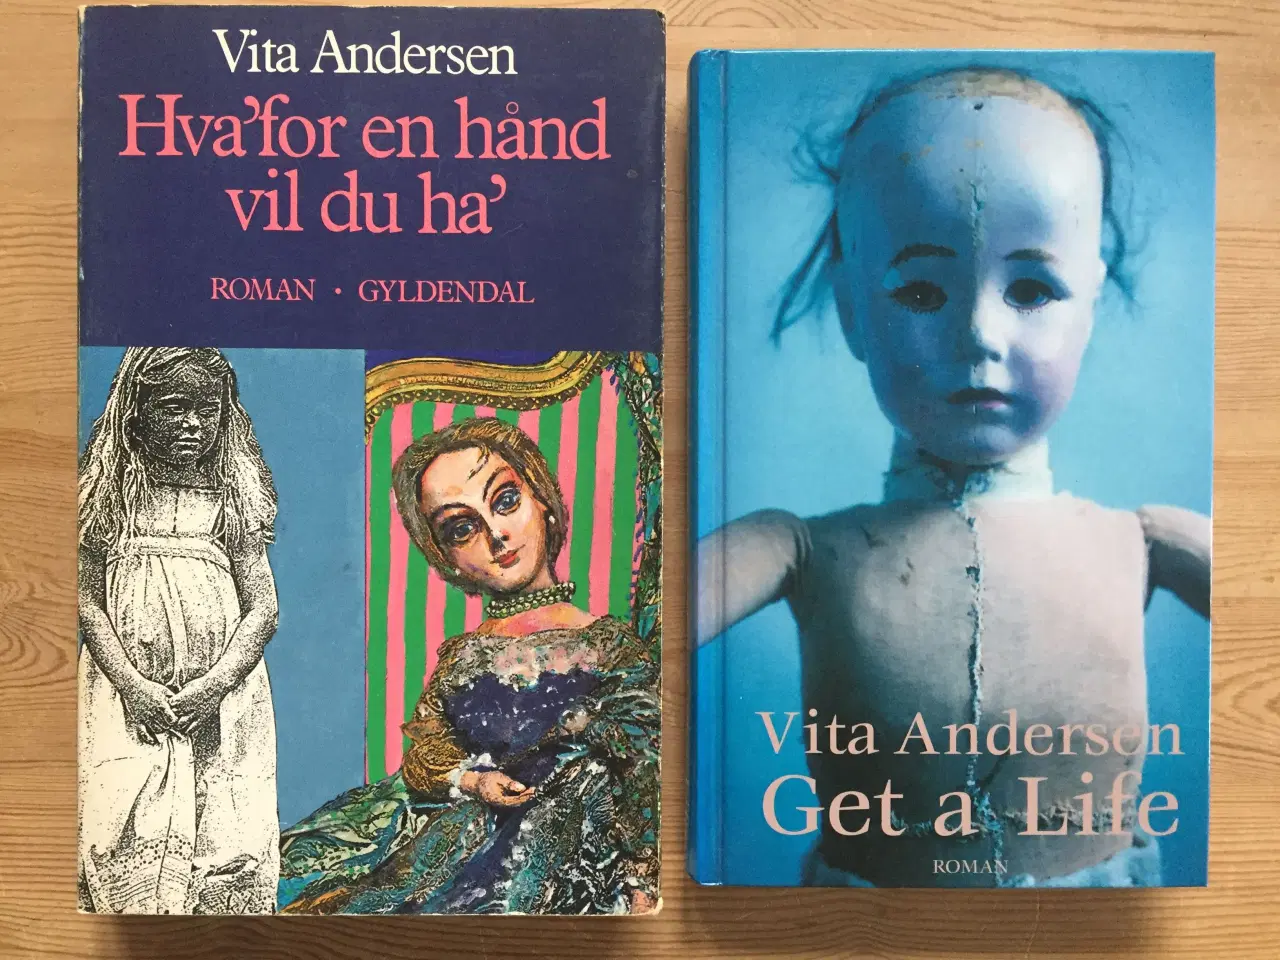 Billede 5 - Romaner og noveller af danske forfattere